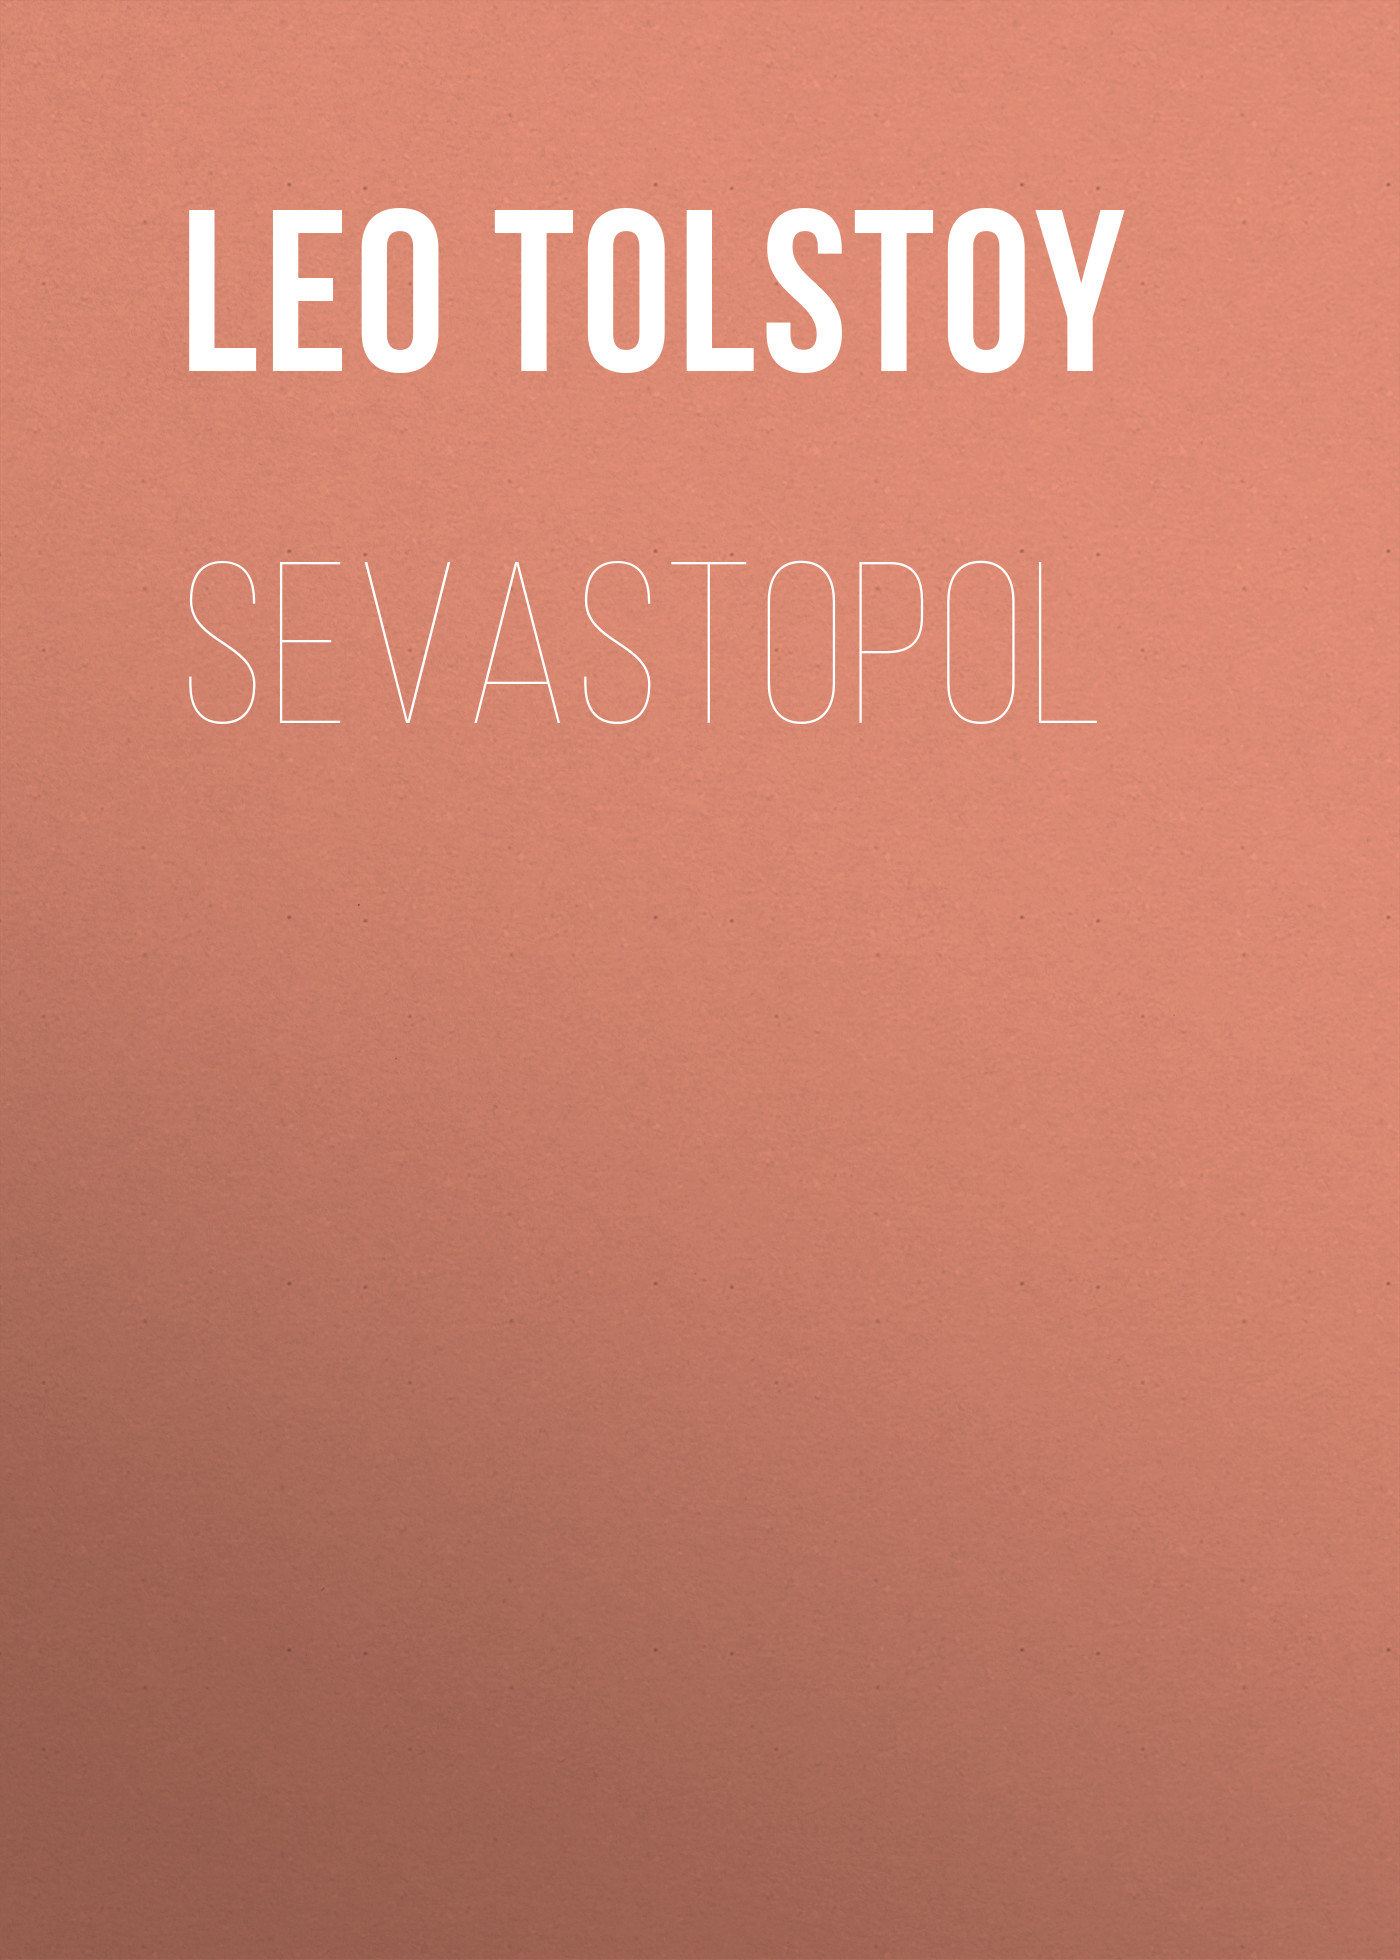 Книга Sevastopol из серии , созданная Leo Tolstoy, может относится к жанру Иностранные языки, Русская классика. Стоимость электронной книги Sevastopol с идентификатором 23162211 составляет 5.99 руб.